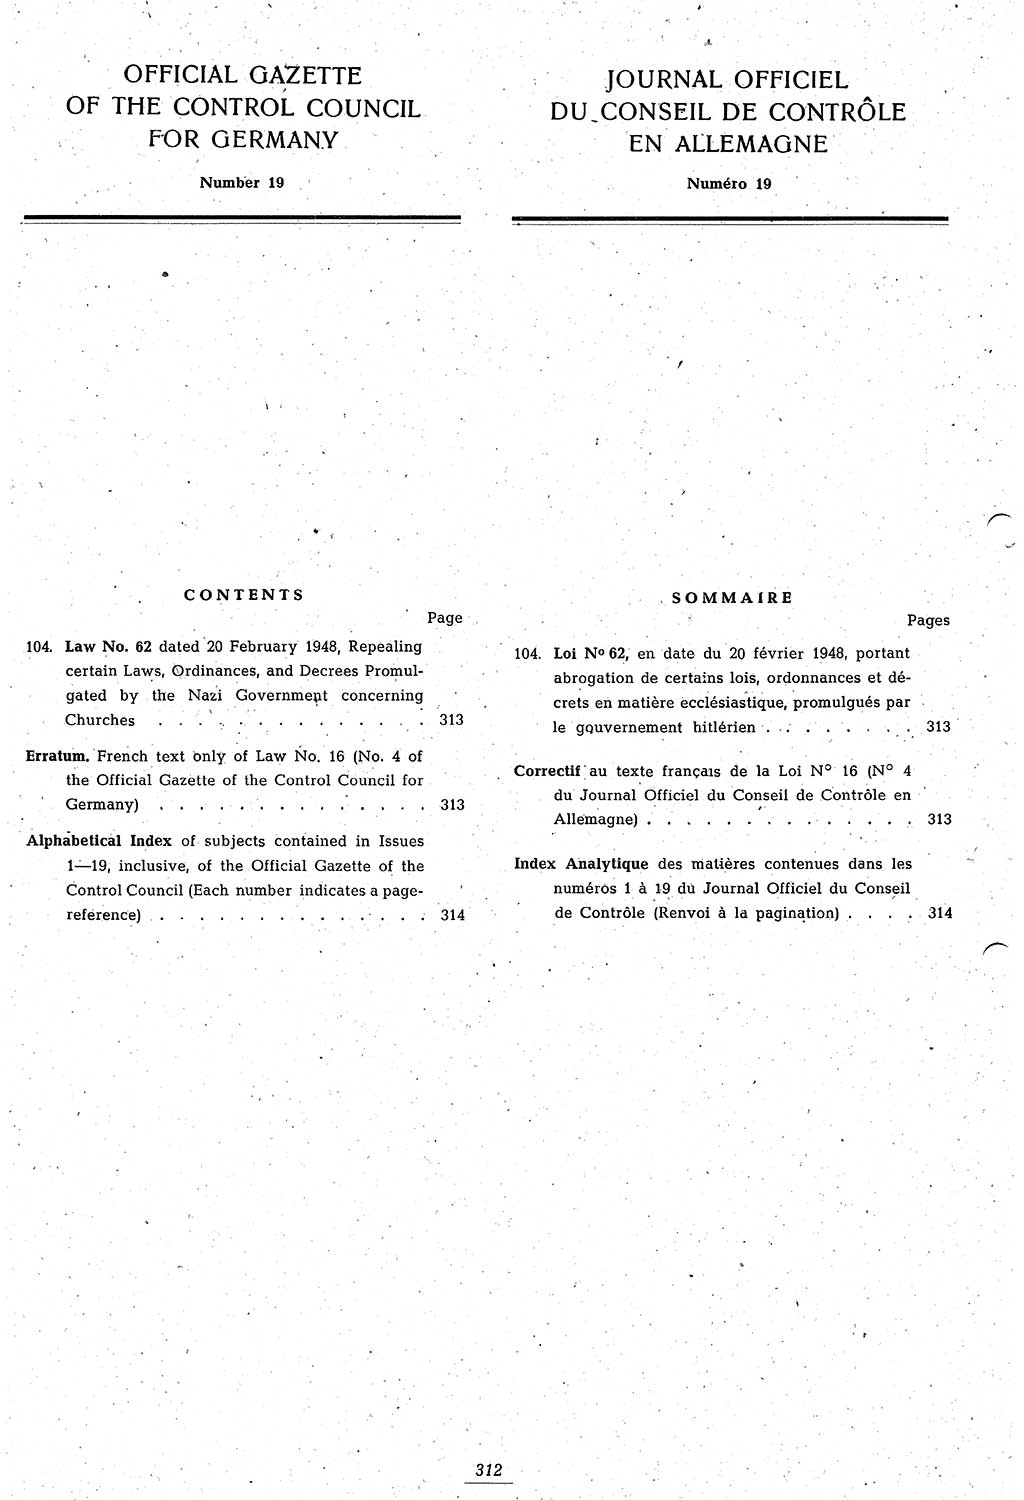 Amtsblatt des Kontrollrats (ABlKR) in Deutschland 1948, Seite 312/1 (ABlKR Dtl. 1948, S. 312/1)